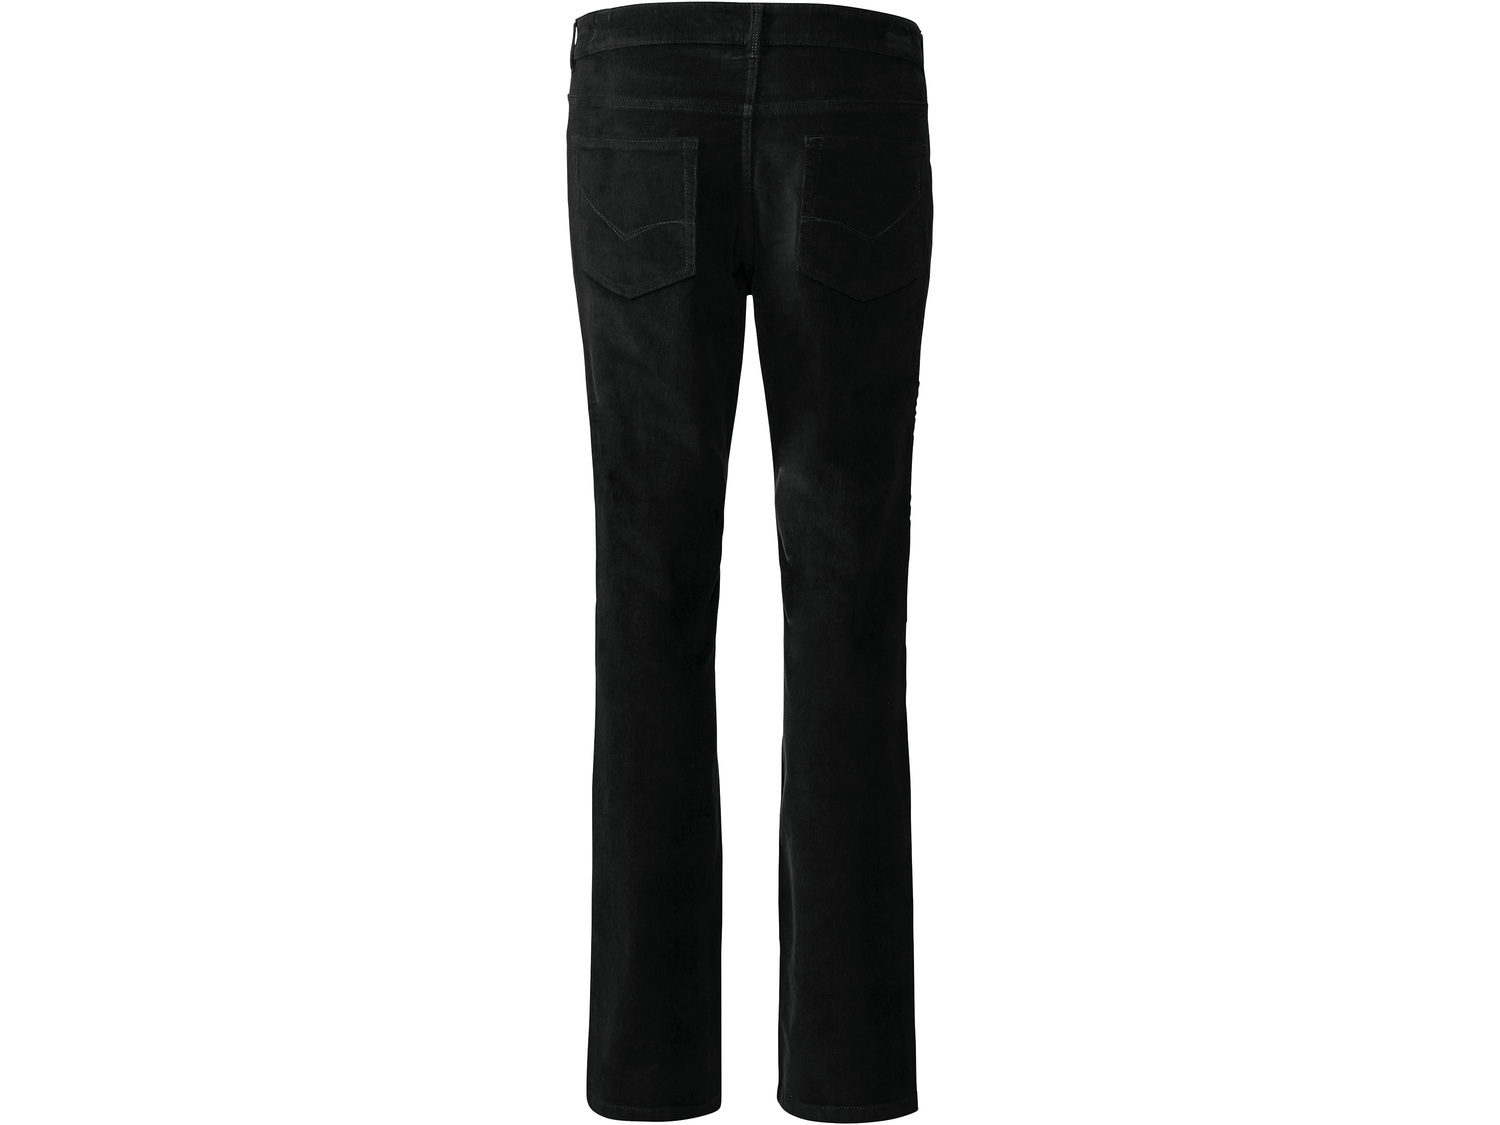 Spodnie sztruksowe Livergy, cena 39,99 PLN 
- klasyczny kr&oacute;j
- komfort ...